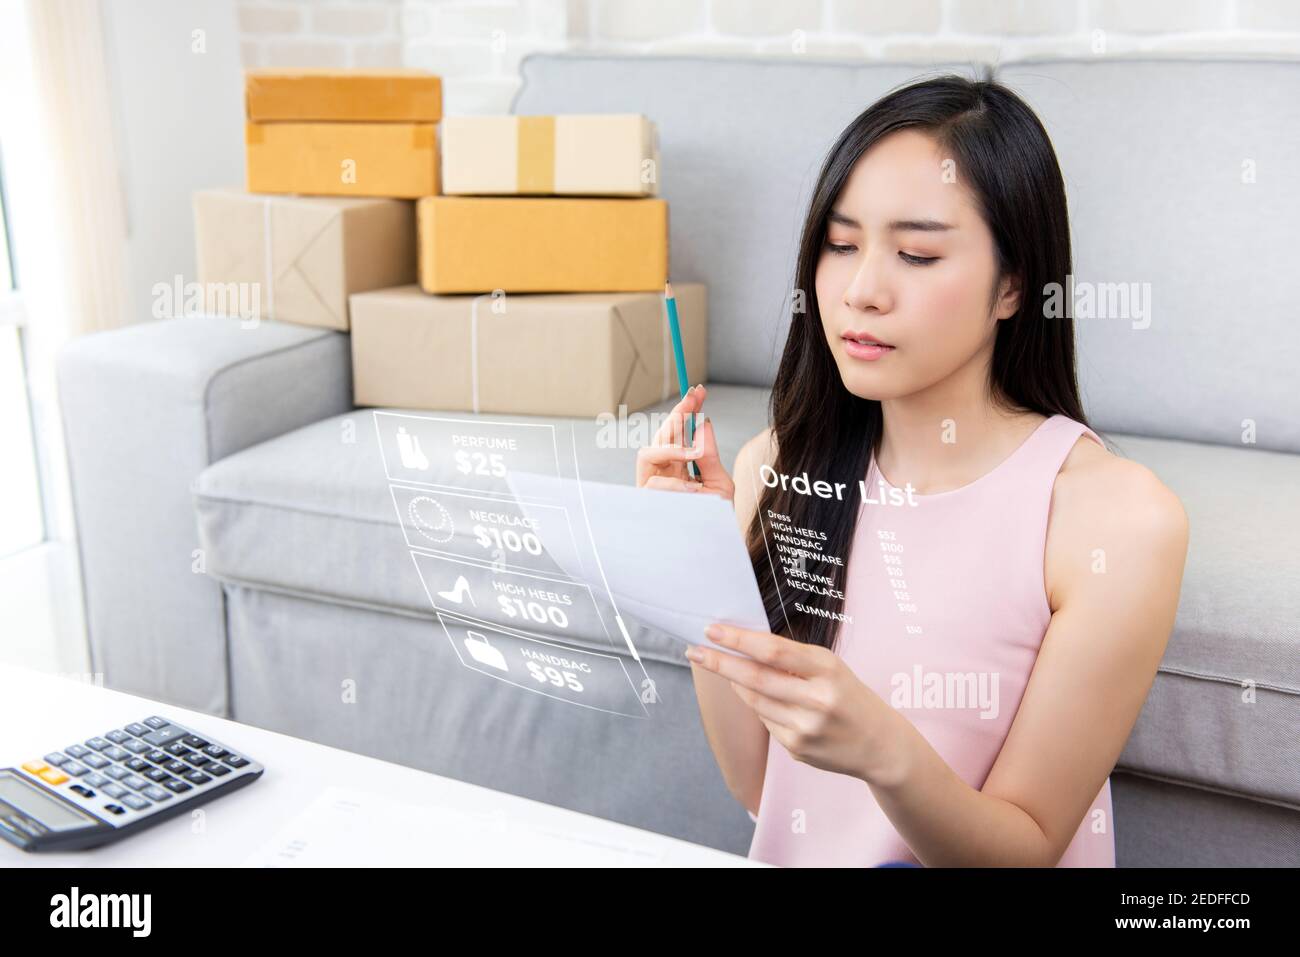 Junge asiatische Frau Unternehmer oder freiberufliche Online-Verkäufer arbeiten bei Home Kontrolle von Bestellungen Vorbereitung für Lieferpakete an Kunden Stockfoto